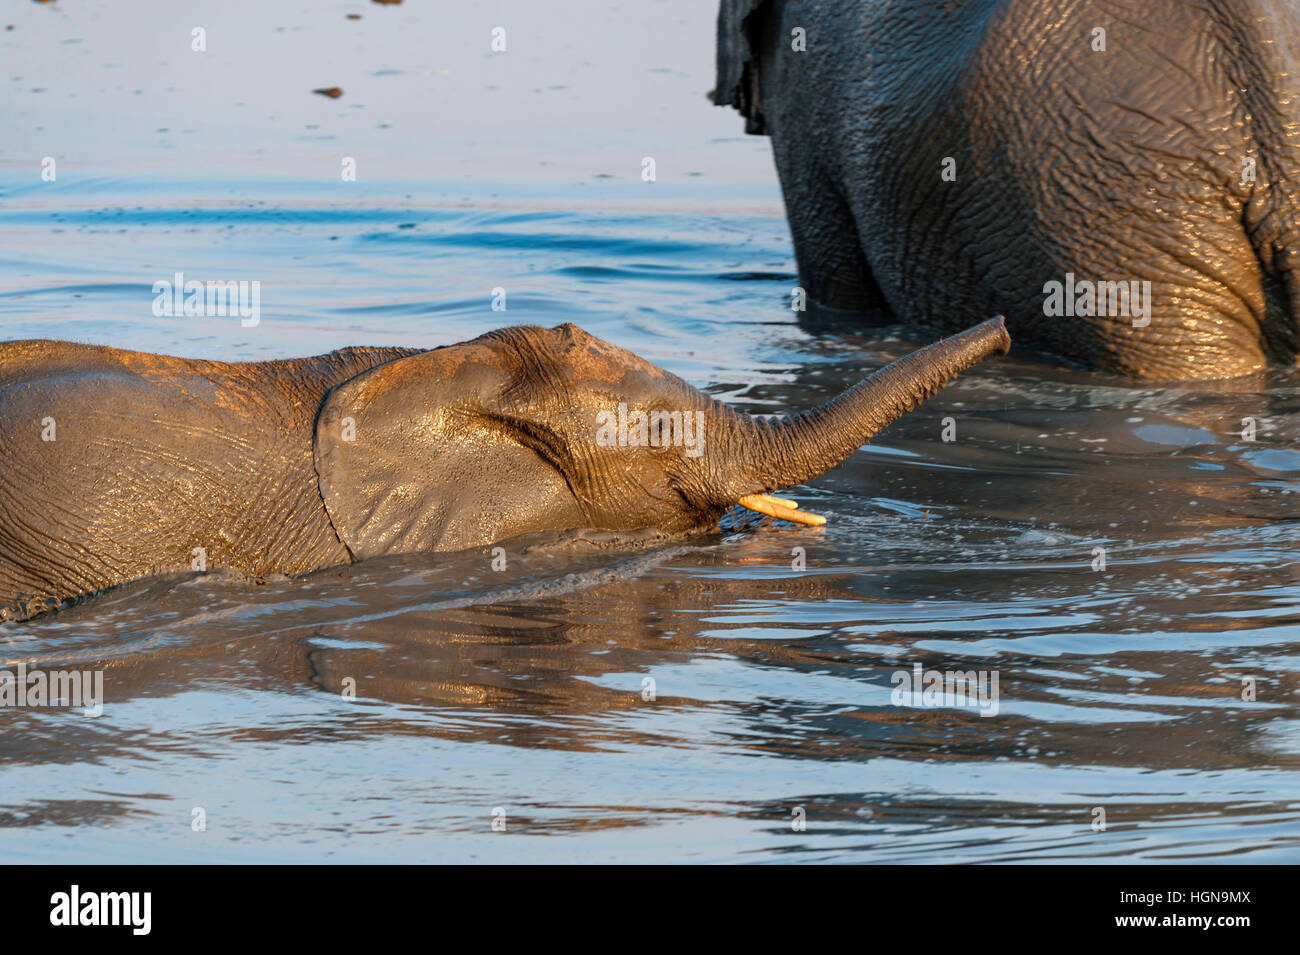 Elefante africano pan beber agua bebida de natación Foto de stock